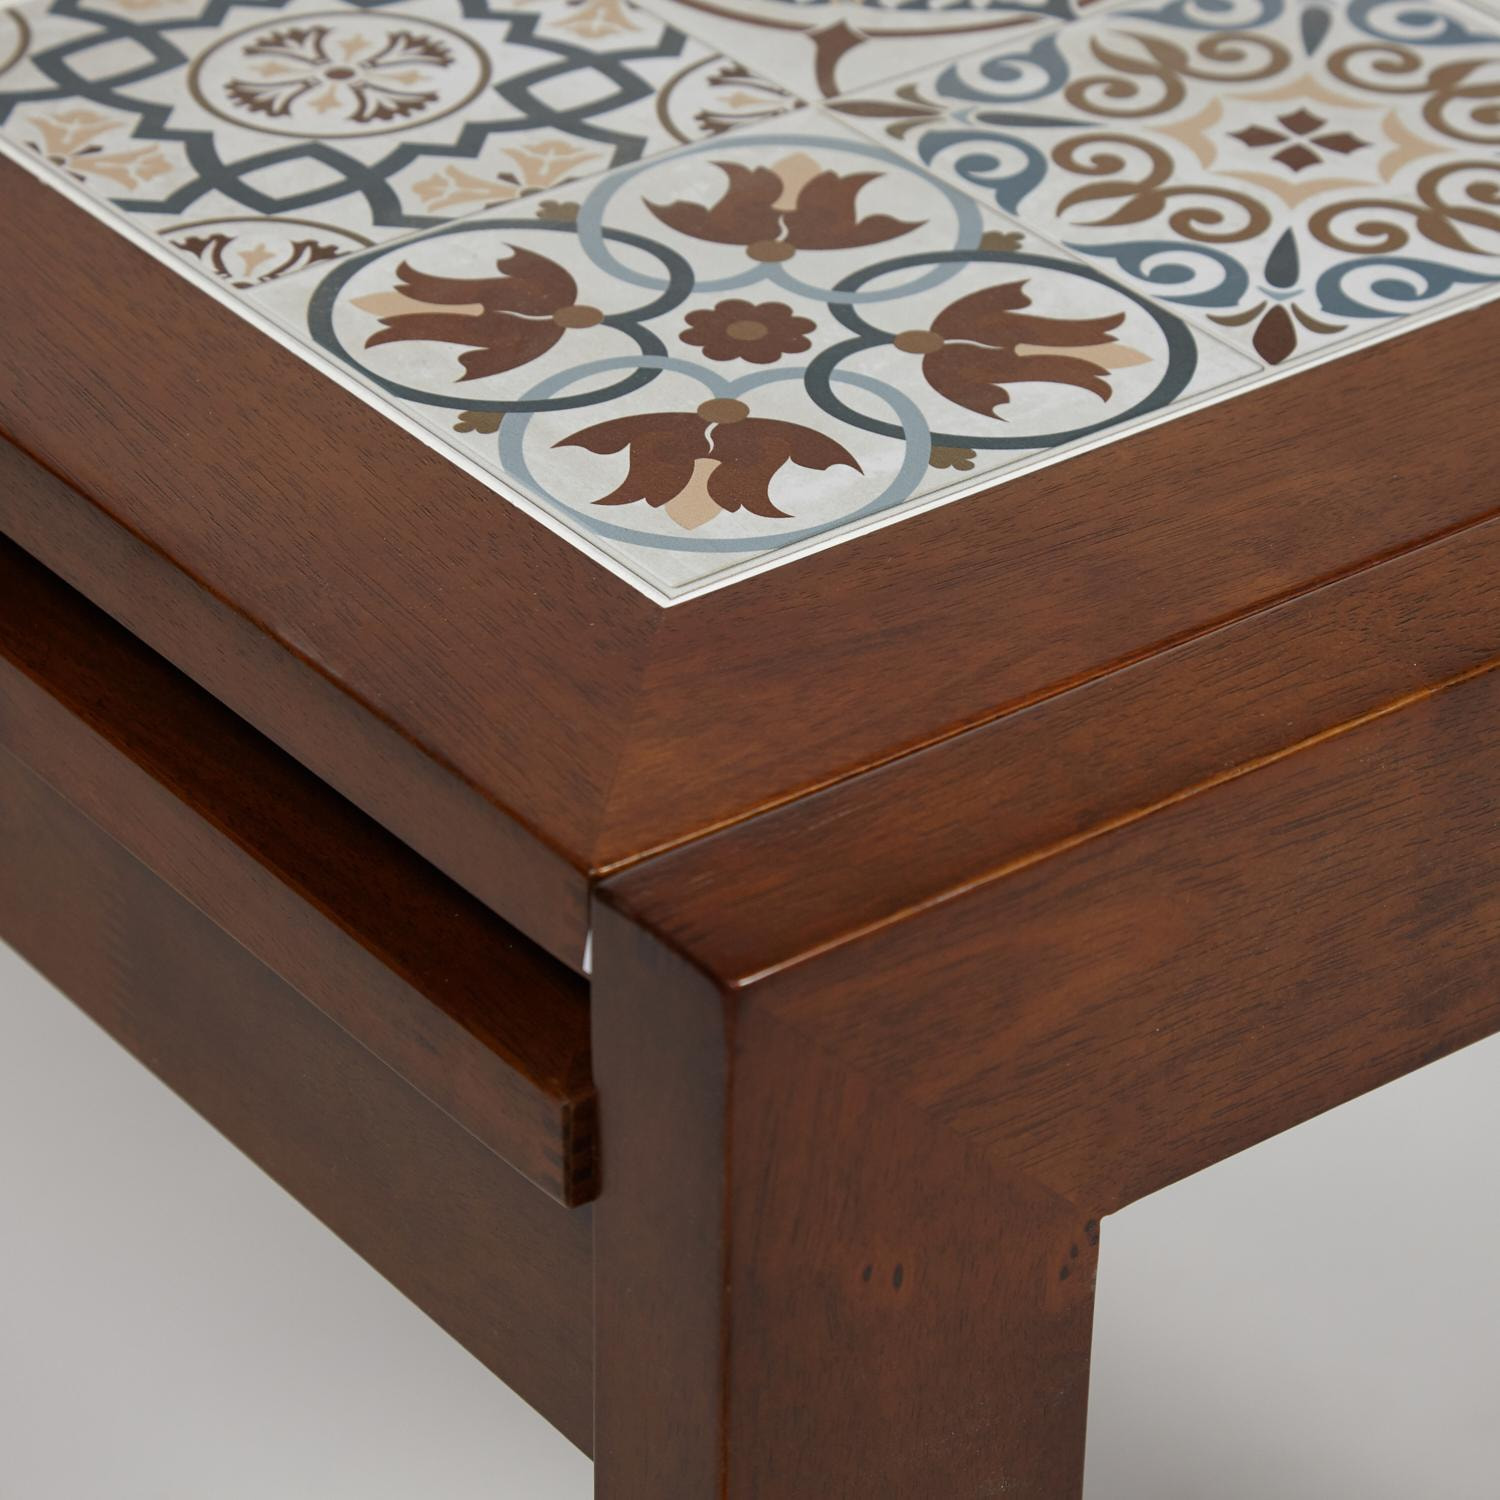 Раскладной обеденный стол из массива гевеи, цвет темный дуб, столешница из плитки с марокканским рисунком